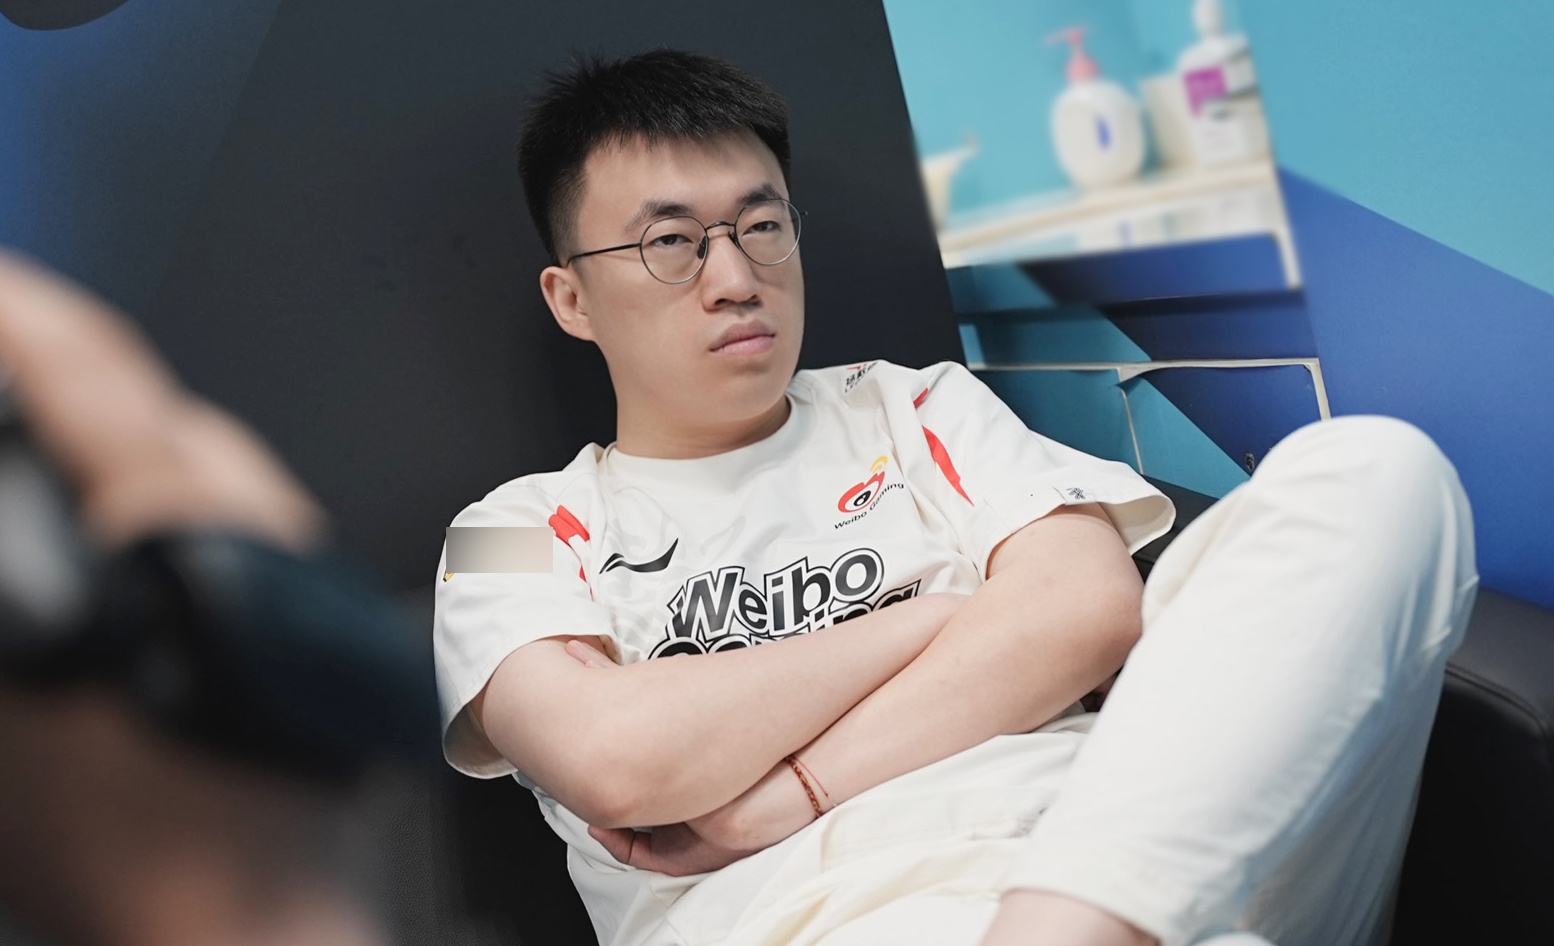 Xiaohu mới đây còn bị phạt vì thoát trận trước khi kết thúc vì thua 1 ván trước RNG